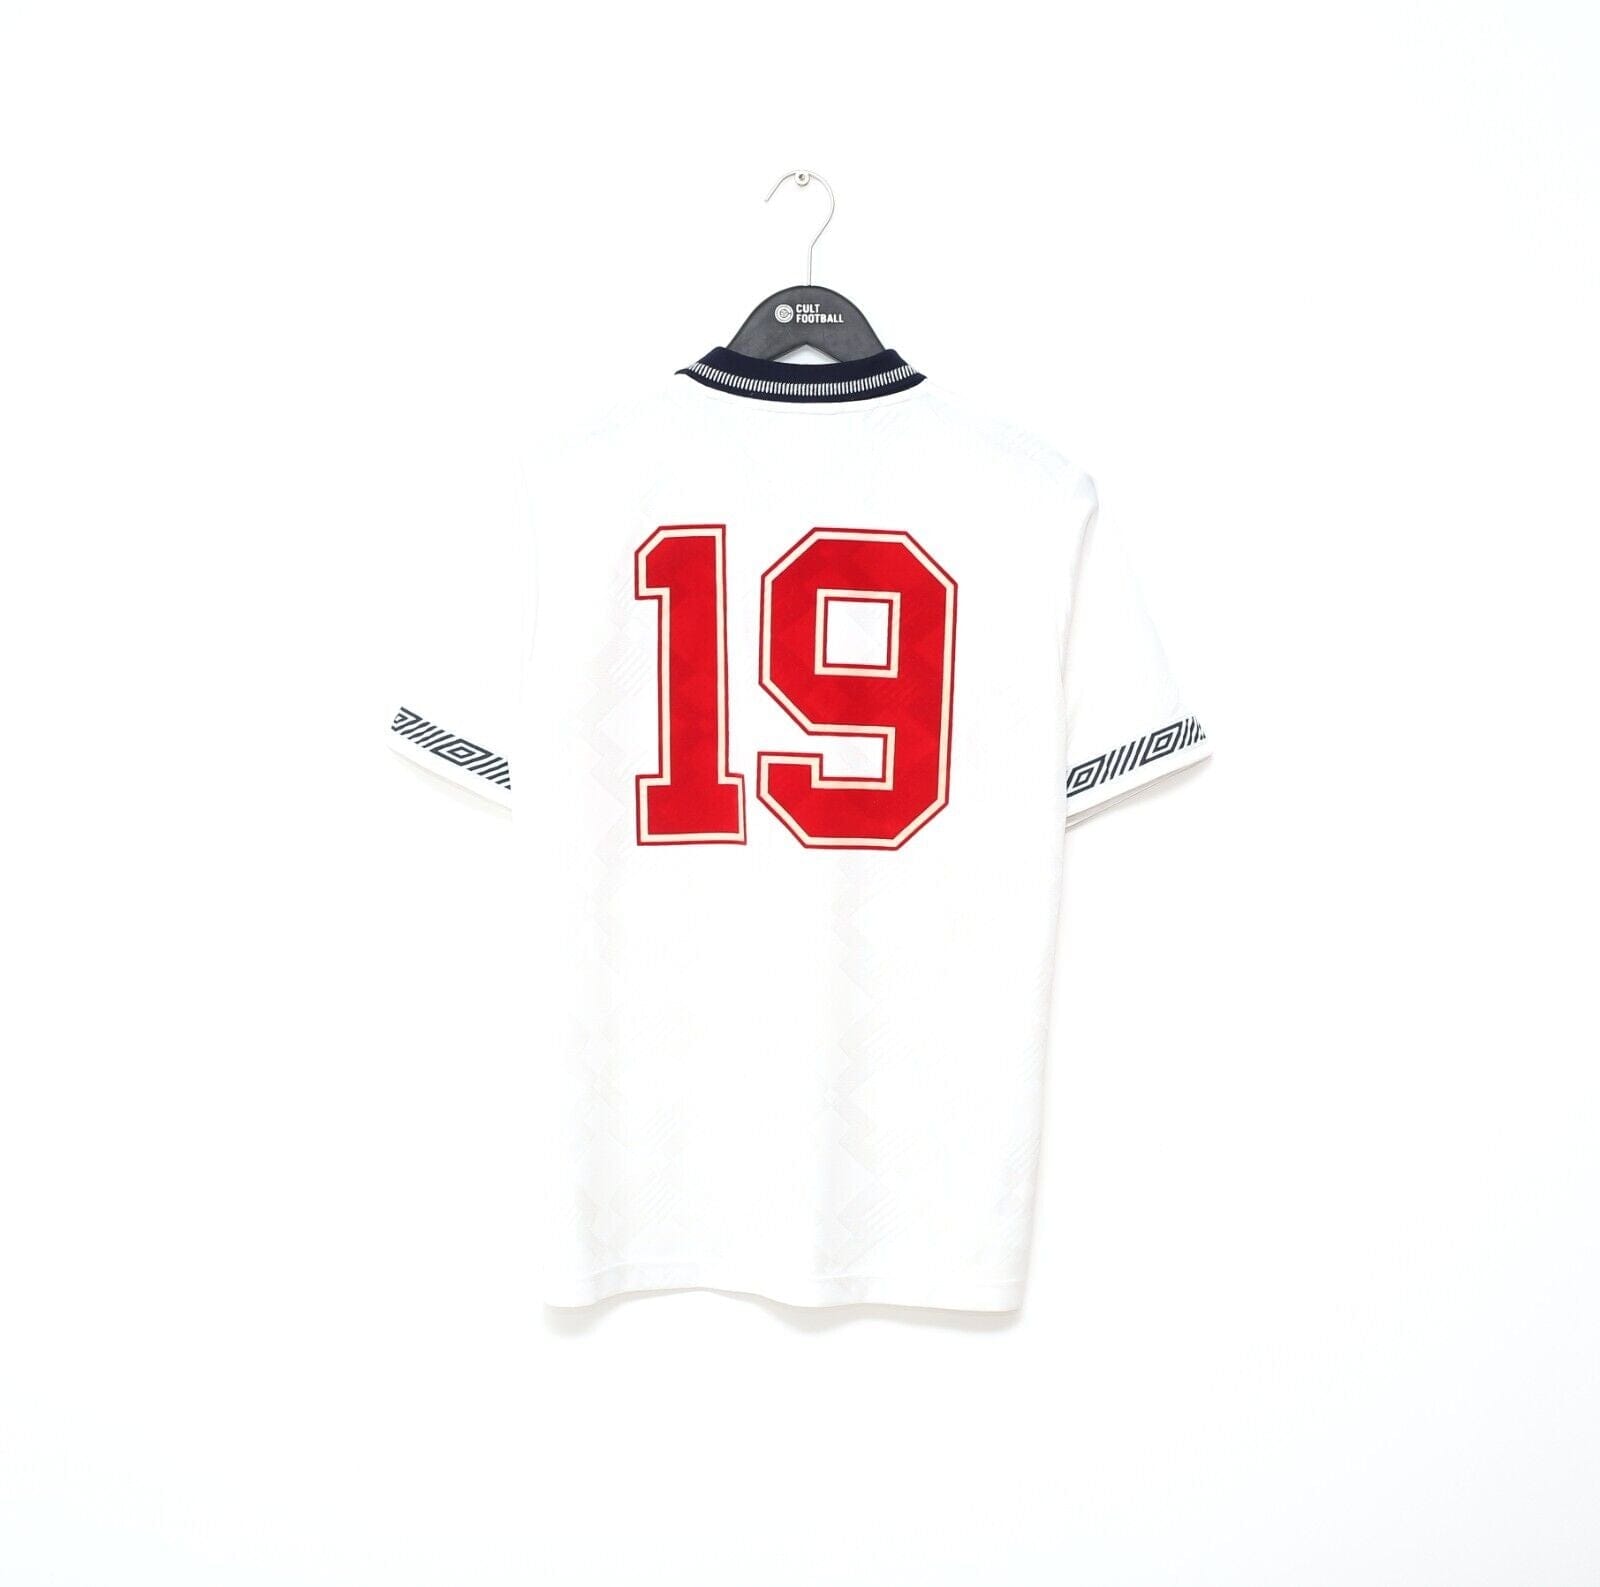 1990/92 GASCOIGNE #19 England Retro Umbro Home Football Shirt (S) Italia 90